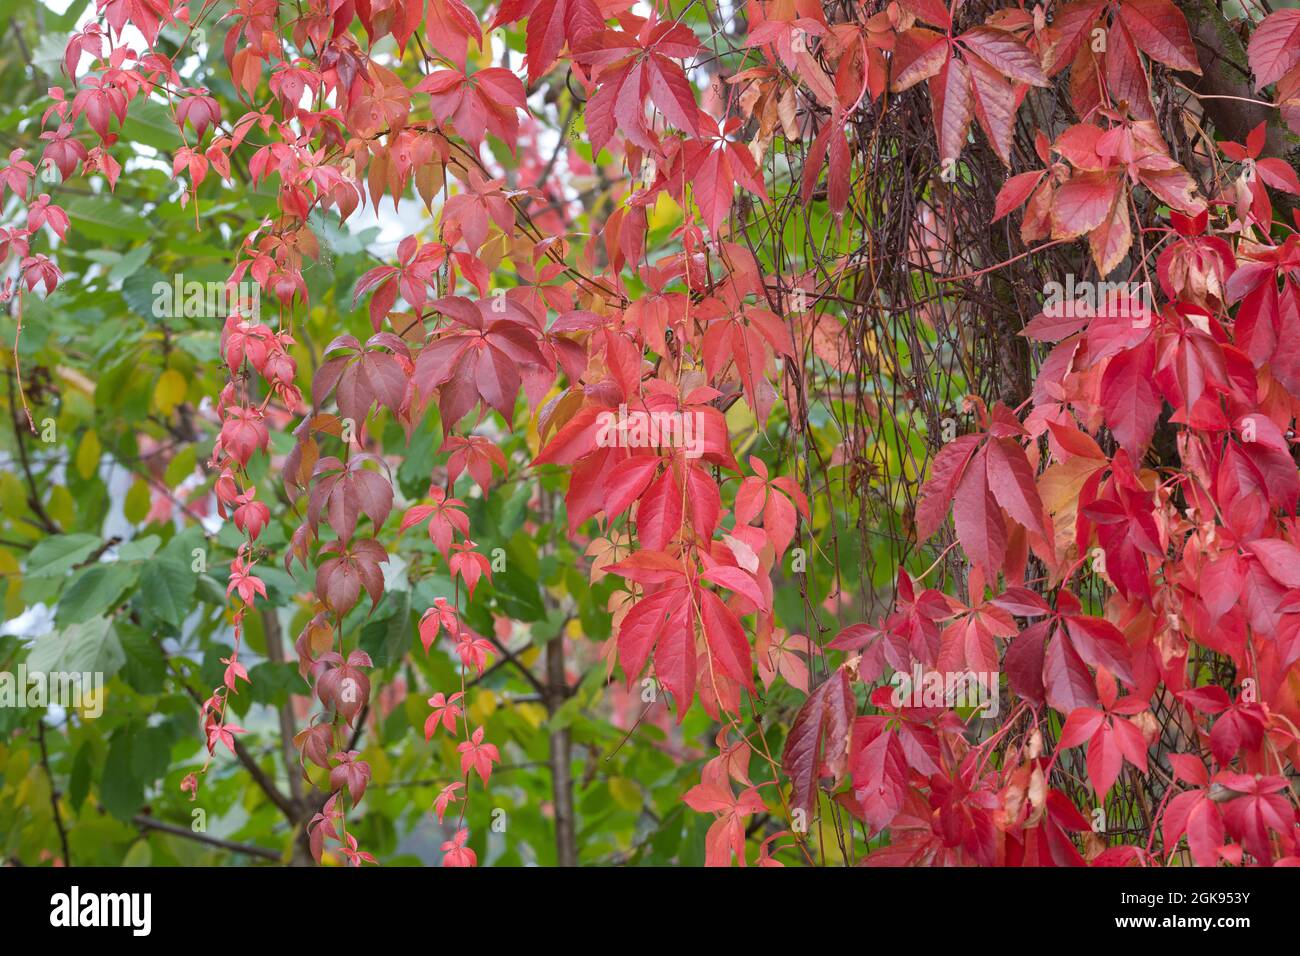 Virginia Creeper, Five Finger (Parthenocissus quinquefolia), autumn leaves Stock Photo